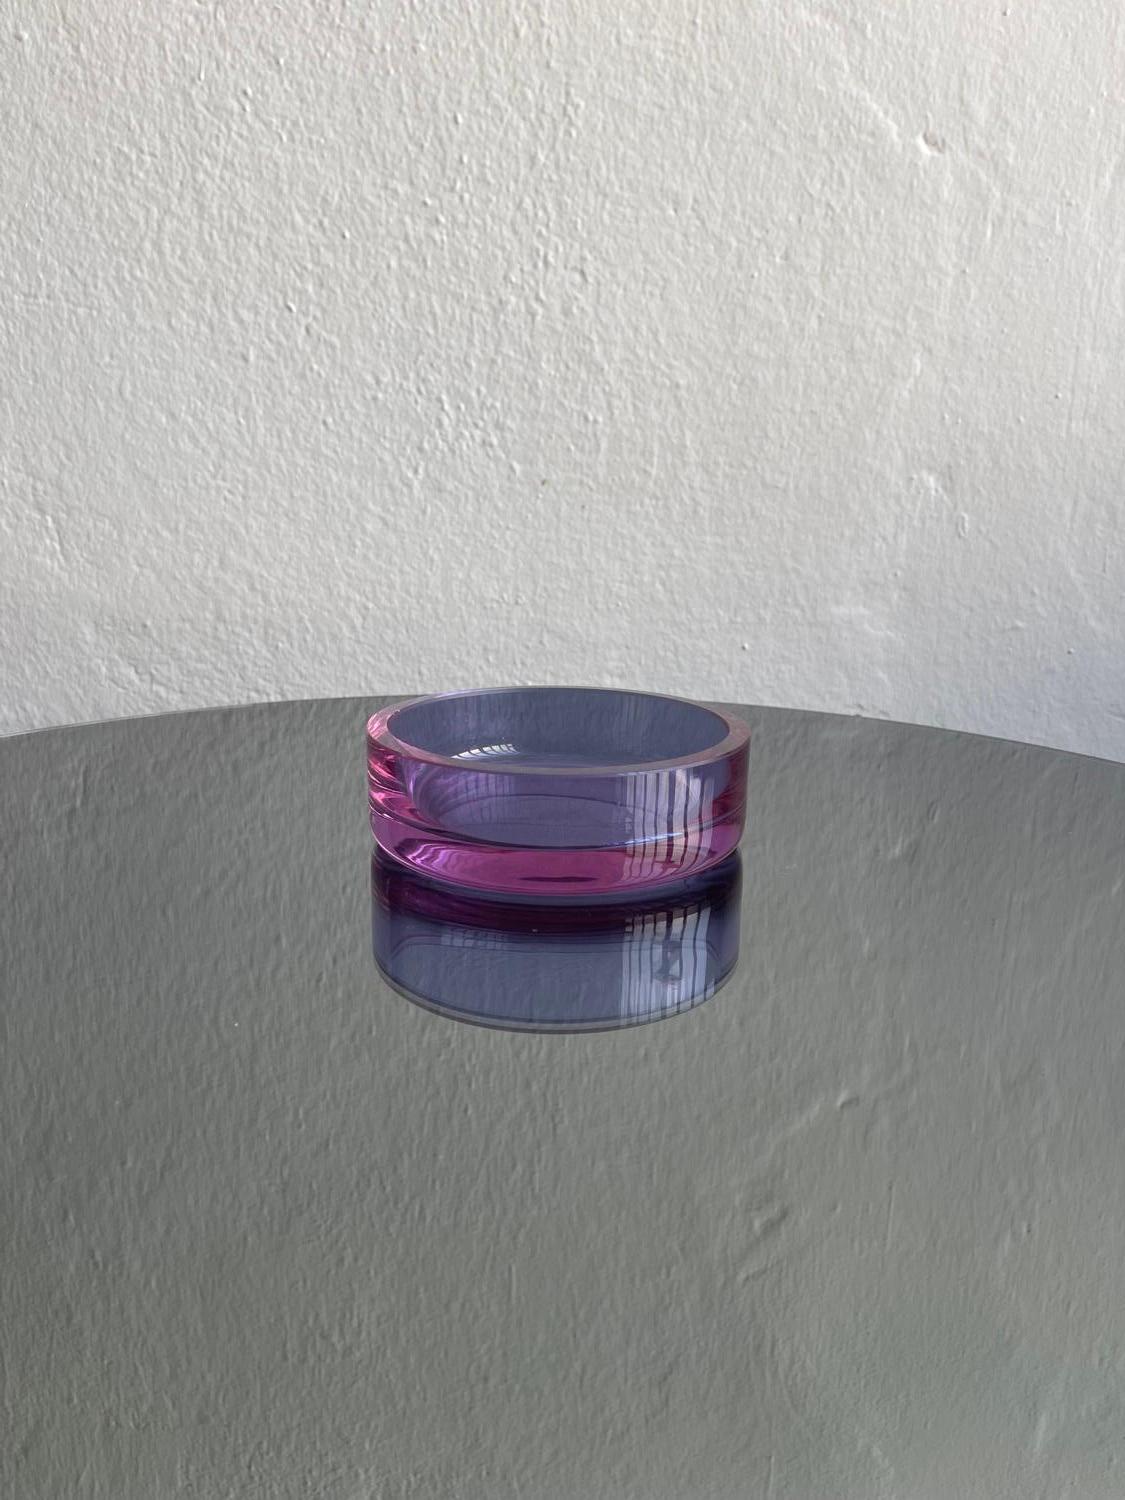 Dekorative Murano Schale - Murano Glas Tablett - Sammlerstücke aus Kunstglas

Eine schöne, zeitlose und dekorative Schale aus Murano-Glas in einem wunderschönen Violett-Lila-Ton, der durch die Zugabe eines kleinen Prozentsatzes von Neodym in der